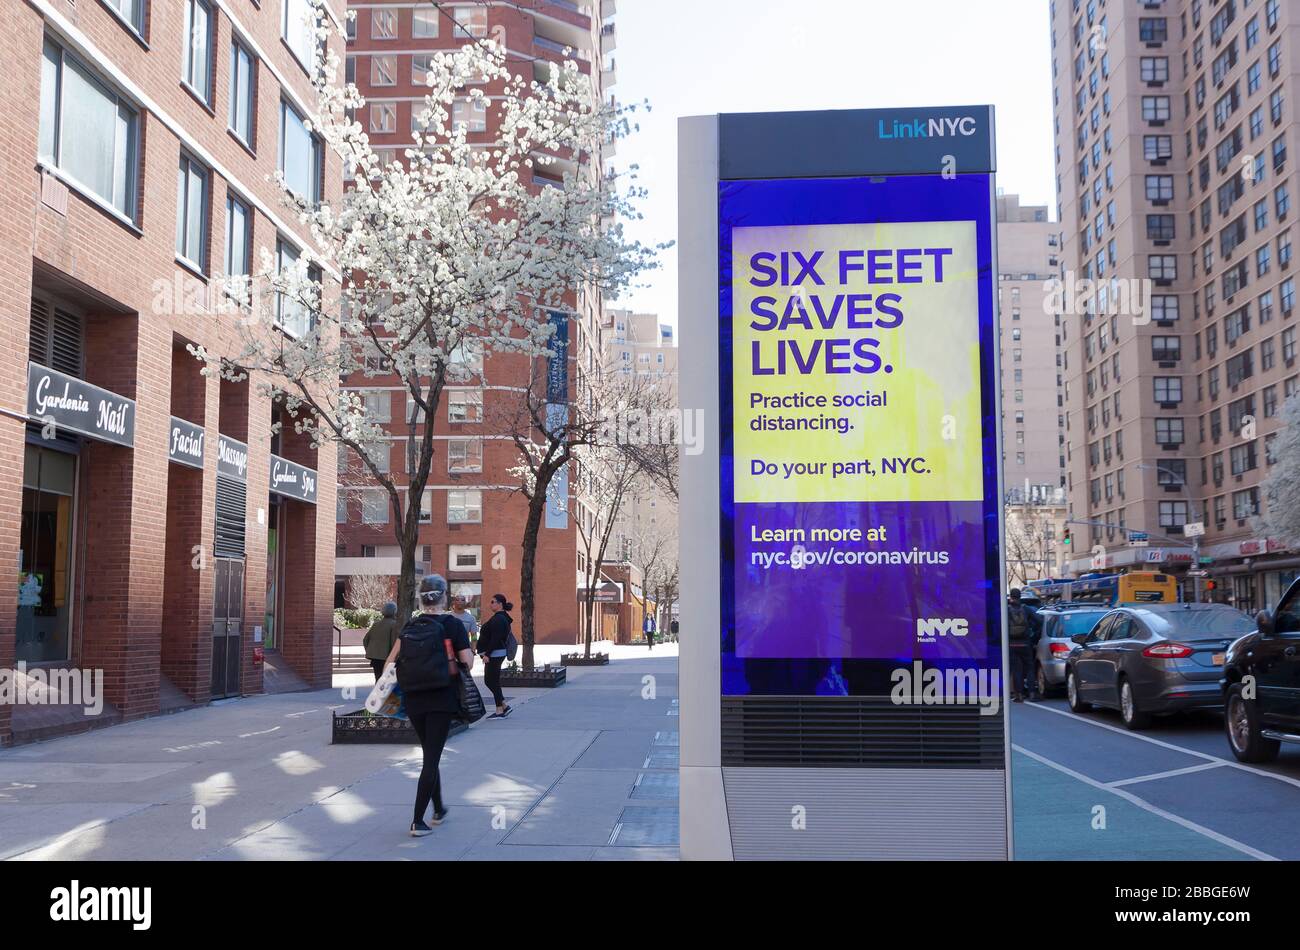 LinkNYC digitaler Kiosk auf dem Bürgersteig, der die Botschaft von Covid-19 (Coronavirus) anzeigt, um soziale Distanzierung zu üben. Stockfoto